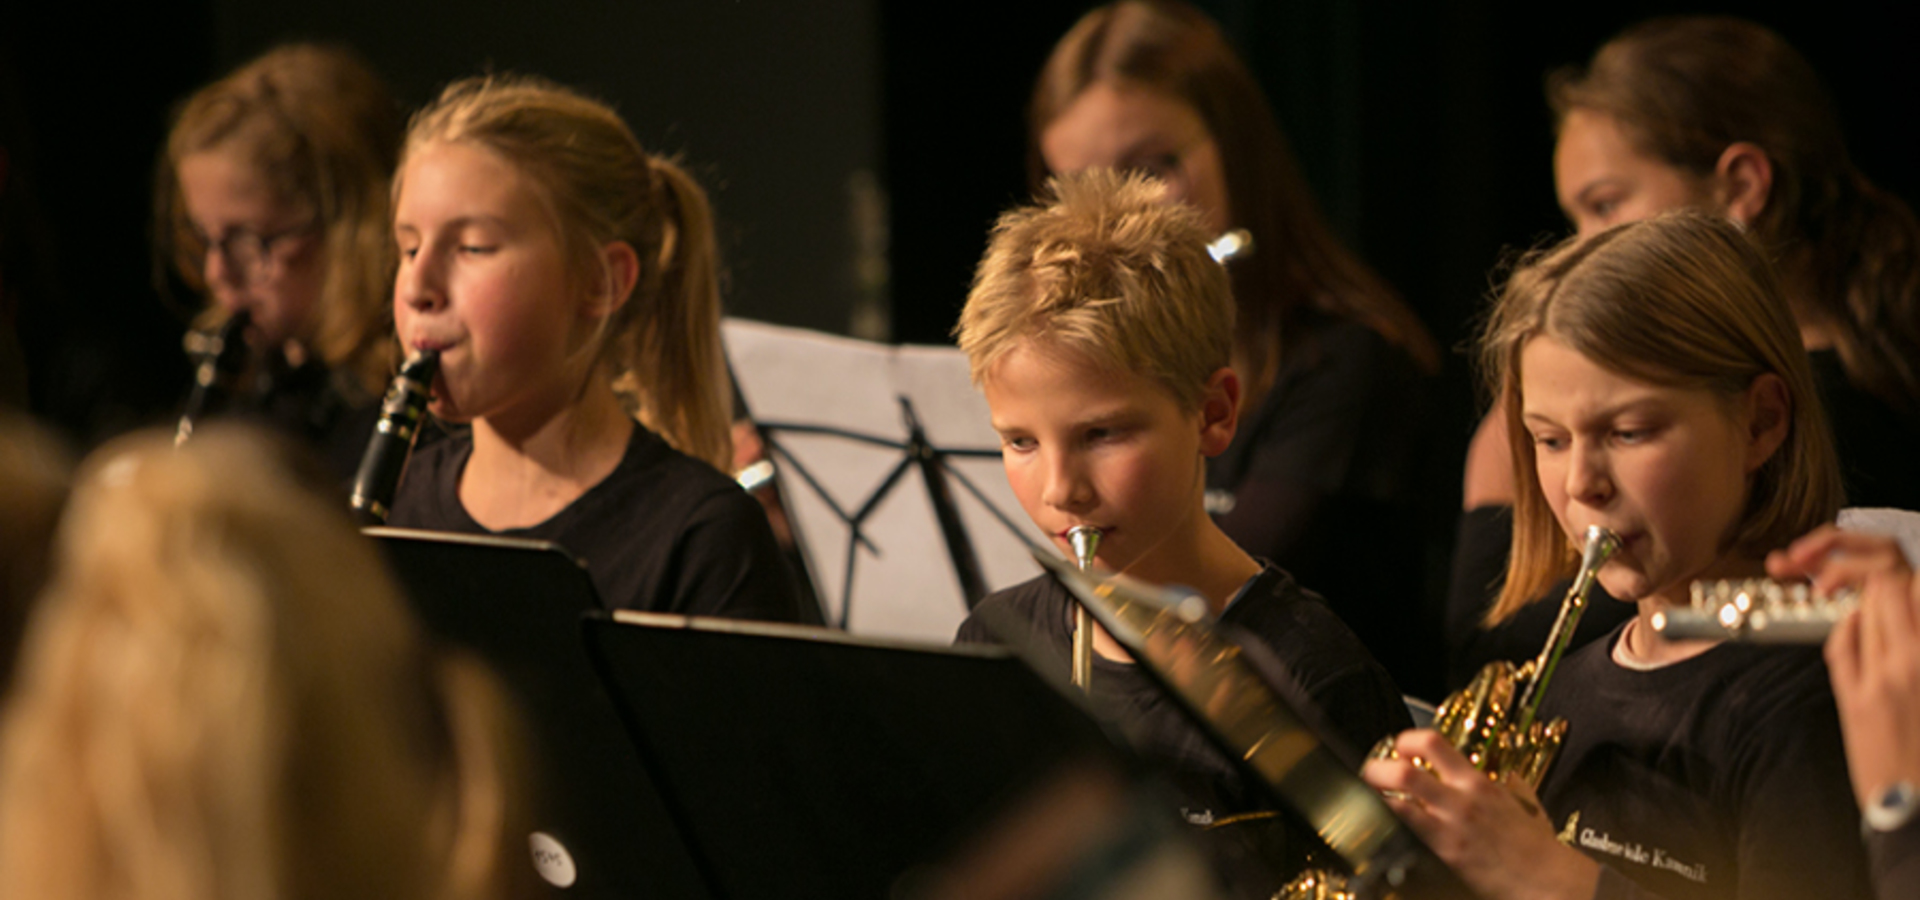 Glasbena šola Kamnik: Zaključni koncert pevskega zbora in orkestrov